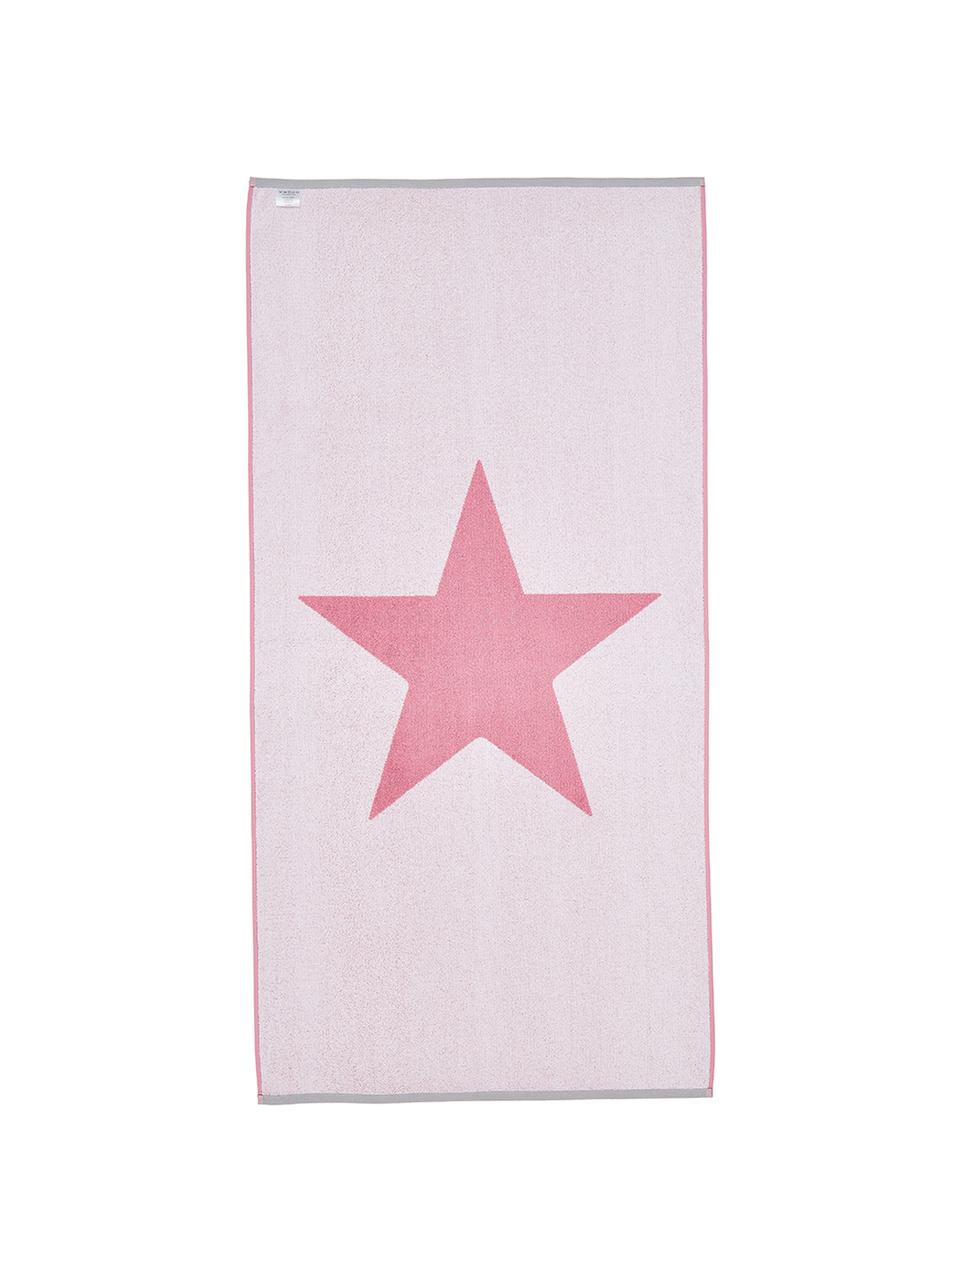 Strandtuch Spork mit Sternen-Motiv, 100% Baumwolle
leichte Qualität 380 g/m², Pink, Weiss, 80 x 160 cm